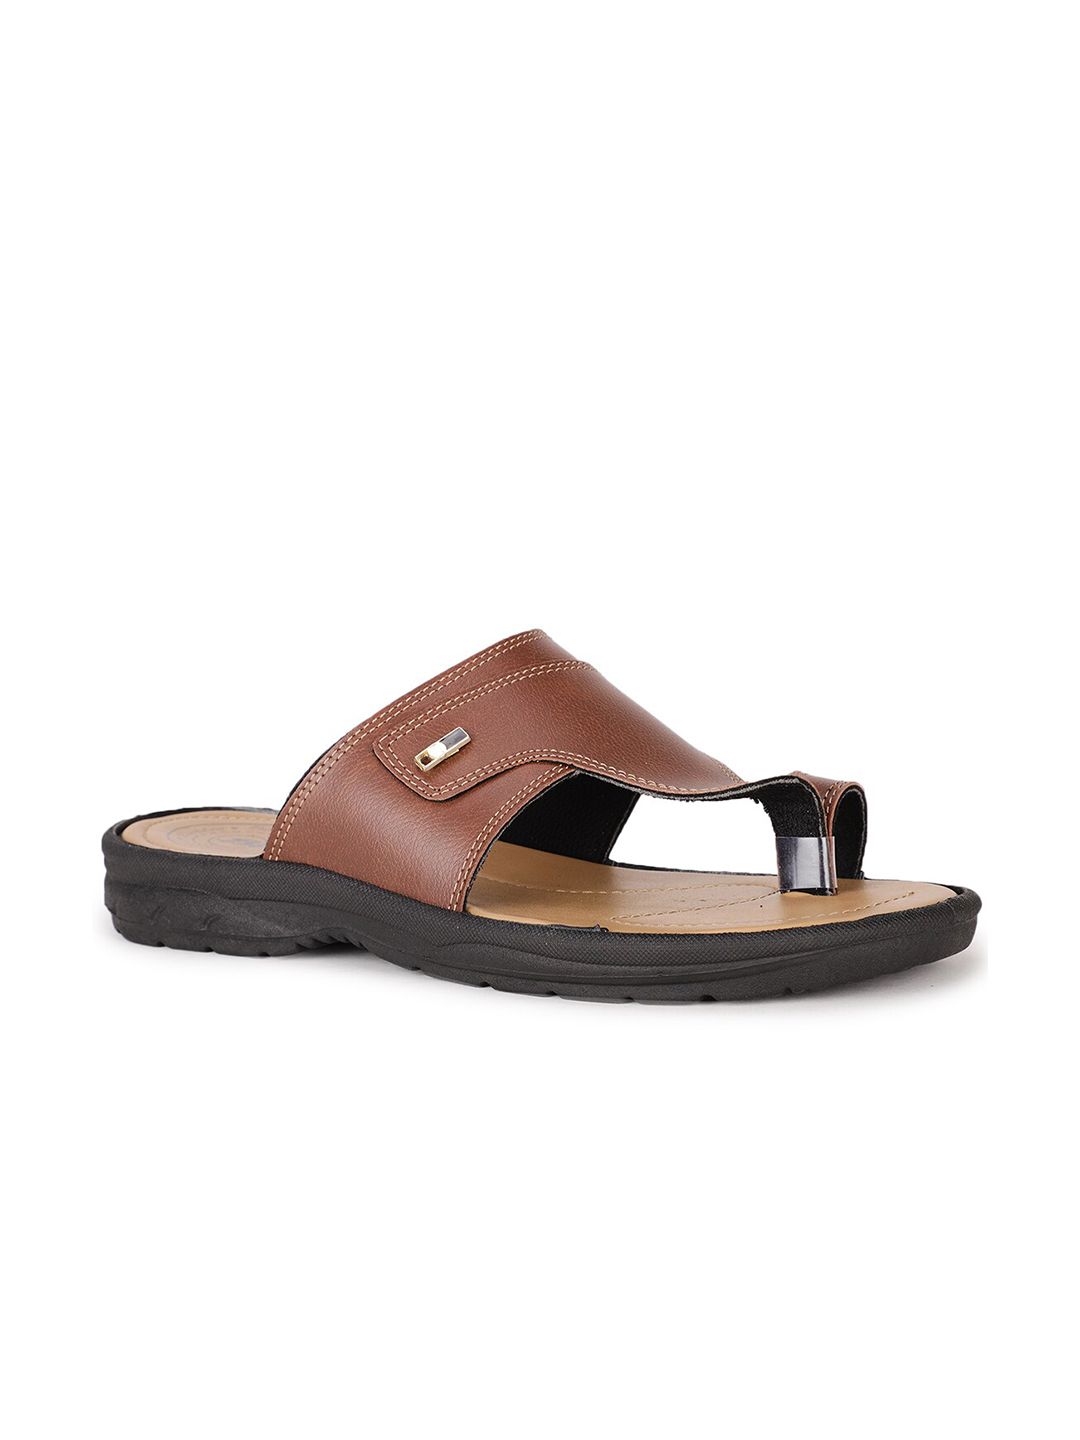 Bata Men Brown & Beige Comfort Sandals